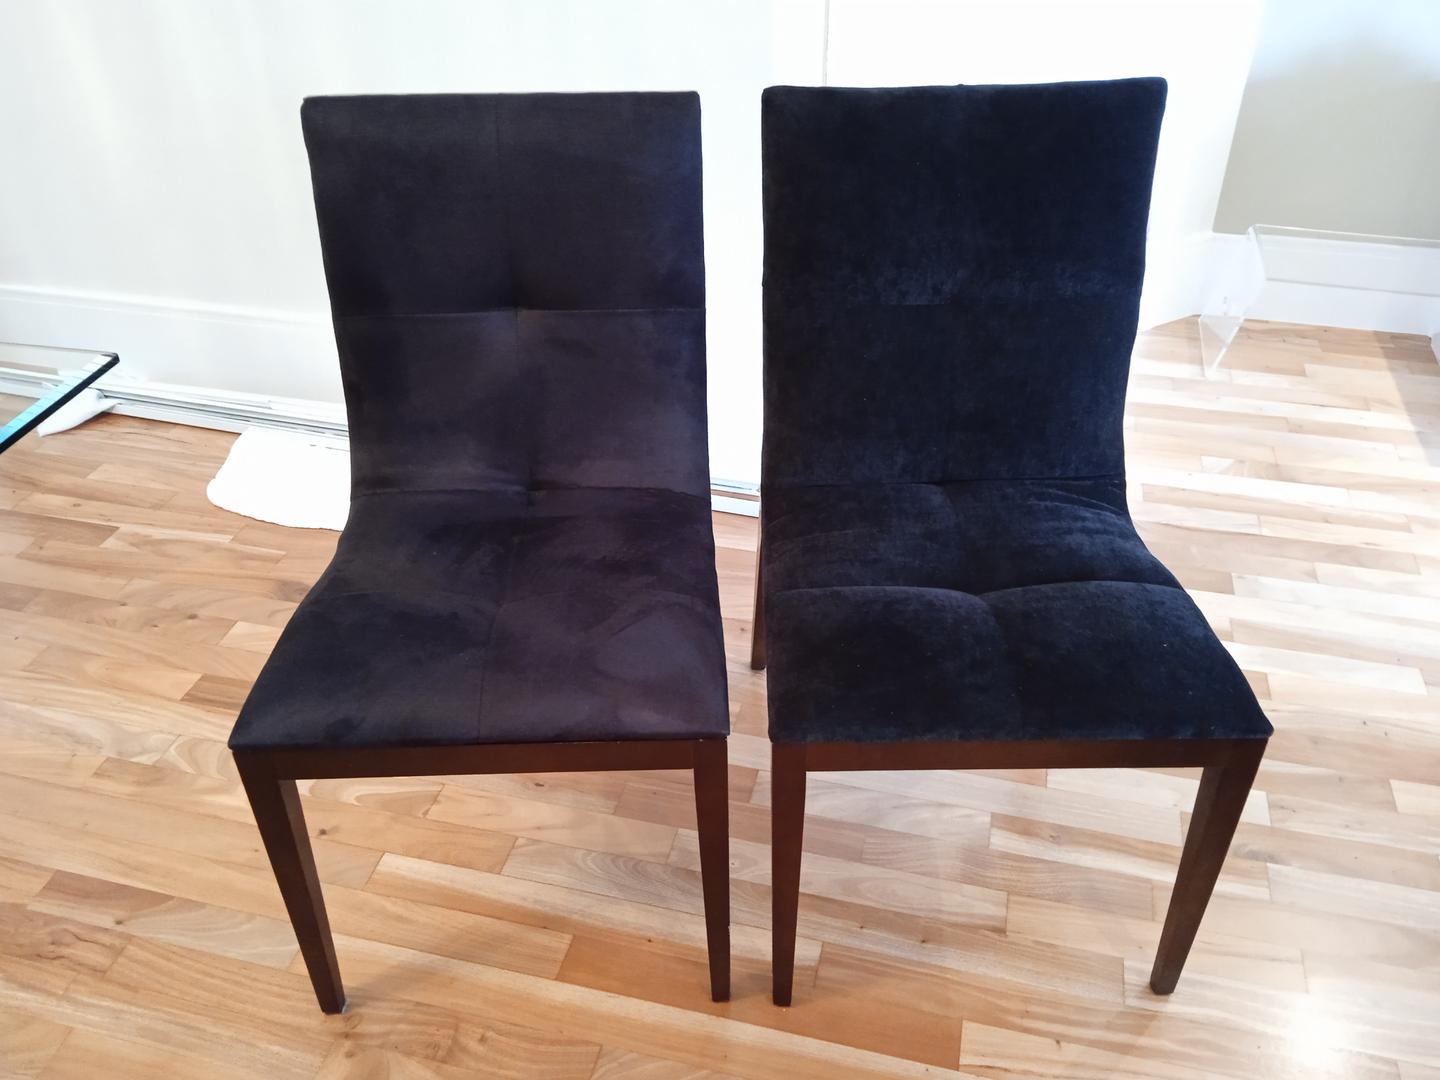 Cadeira fixa estofada s/ braços em Madeira / Estofado Preto 91 cm x 47 cm x 62 cm